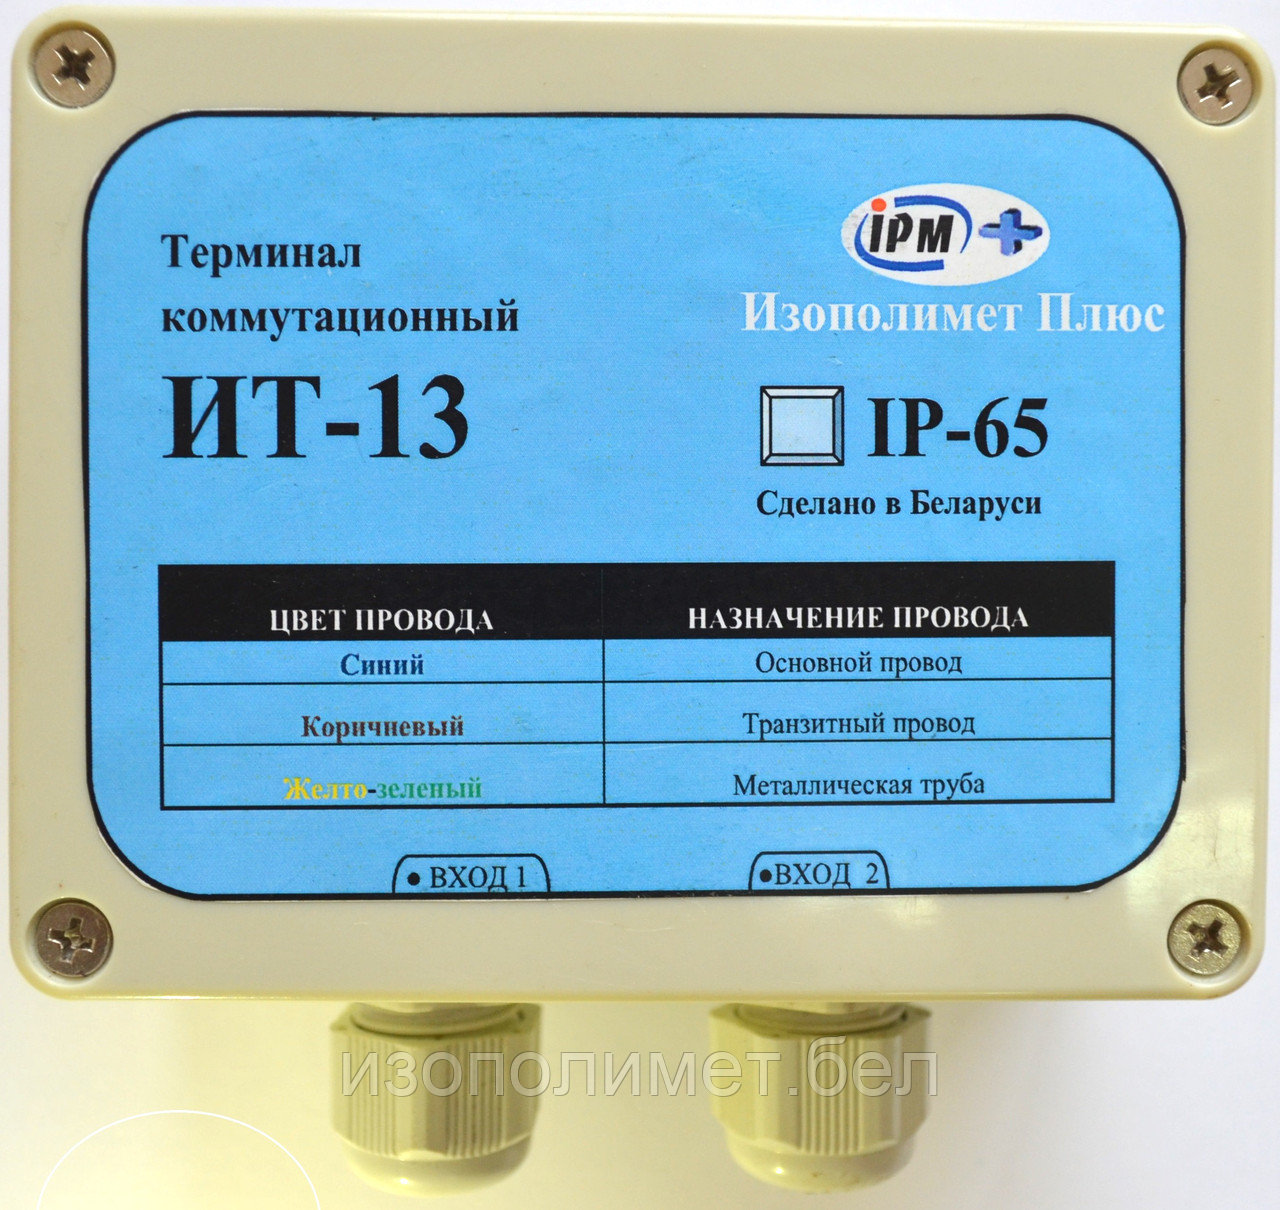 Терминал коммутационный ИТ-13 (КТ-13)